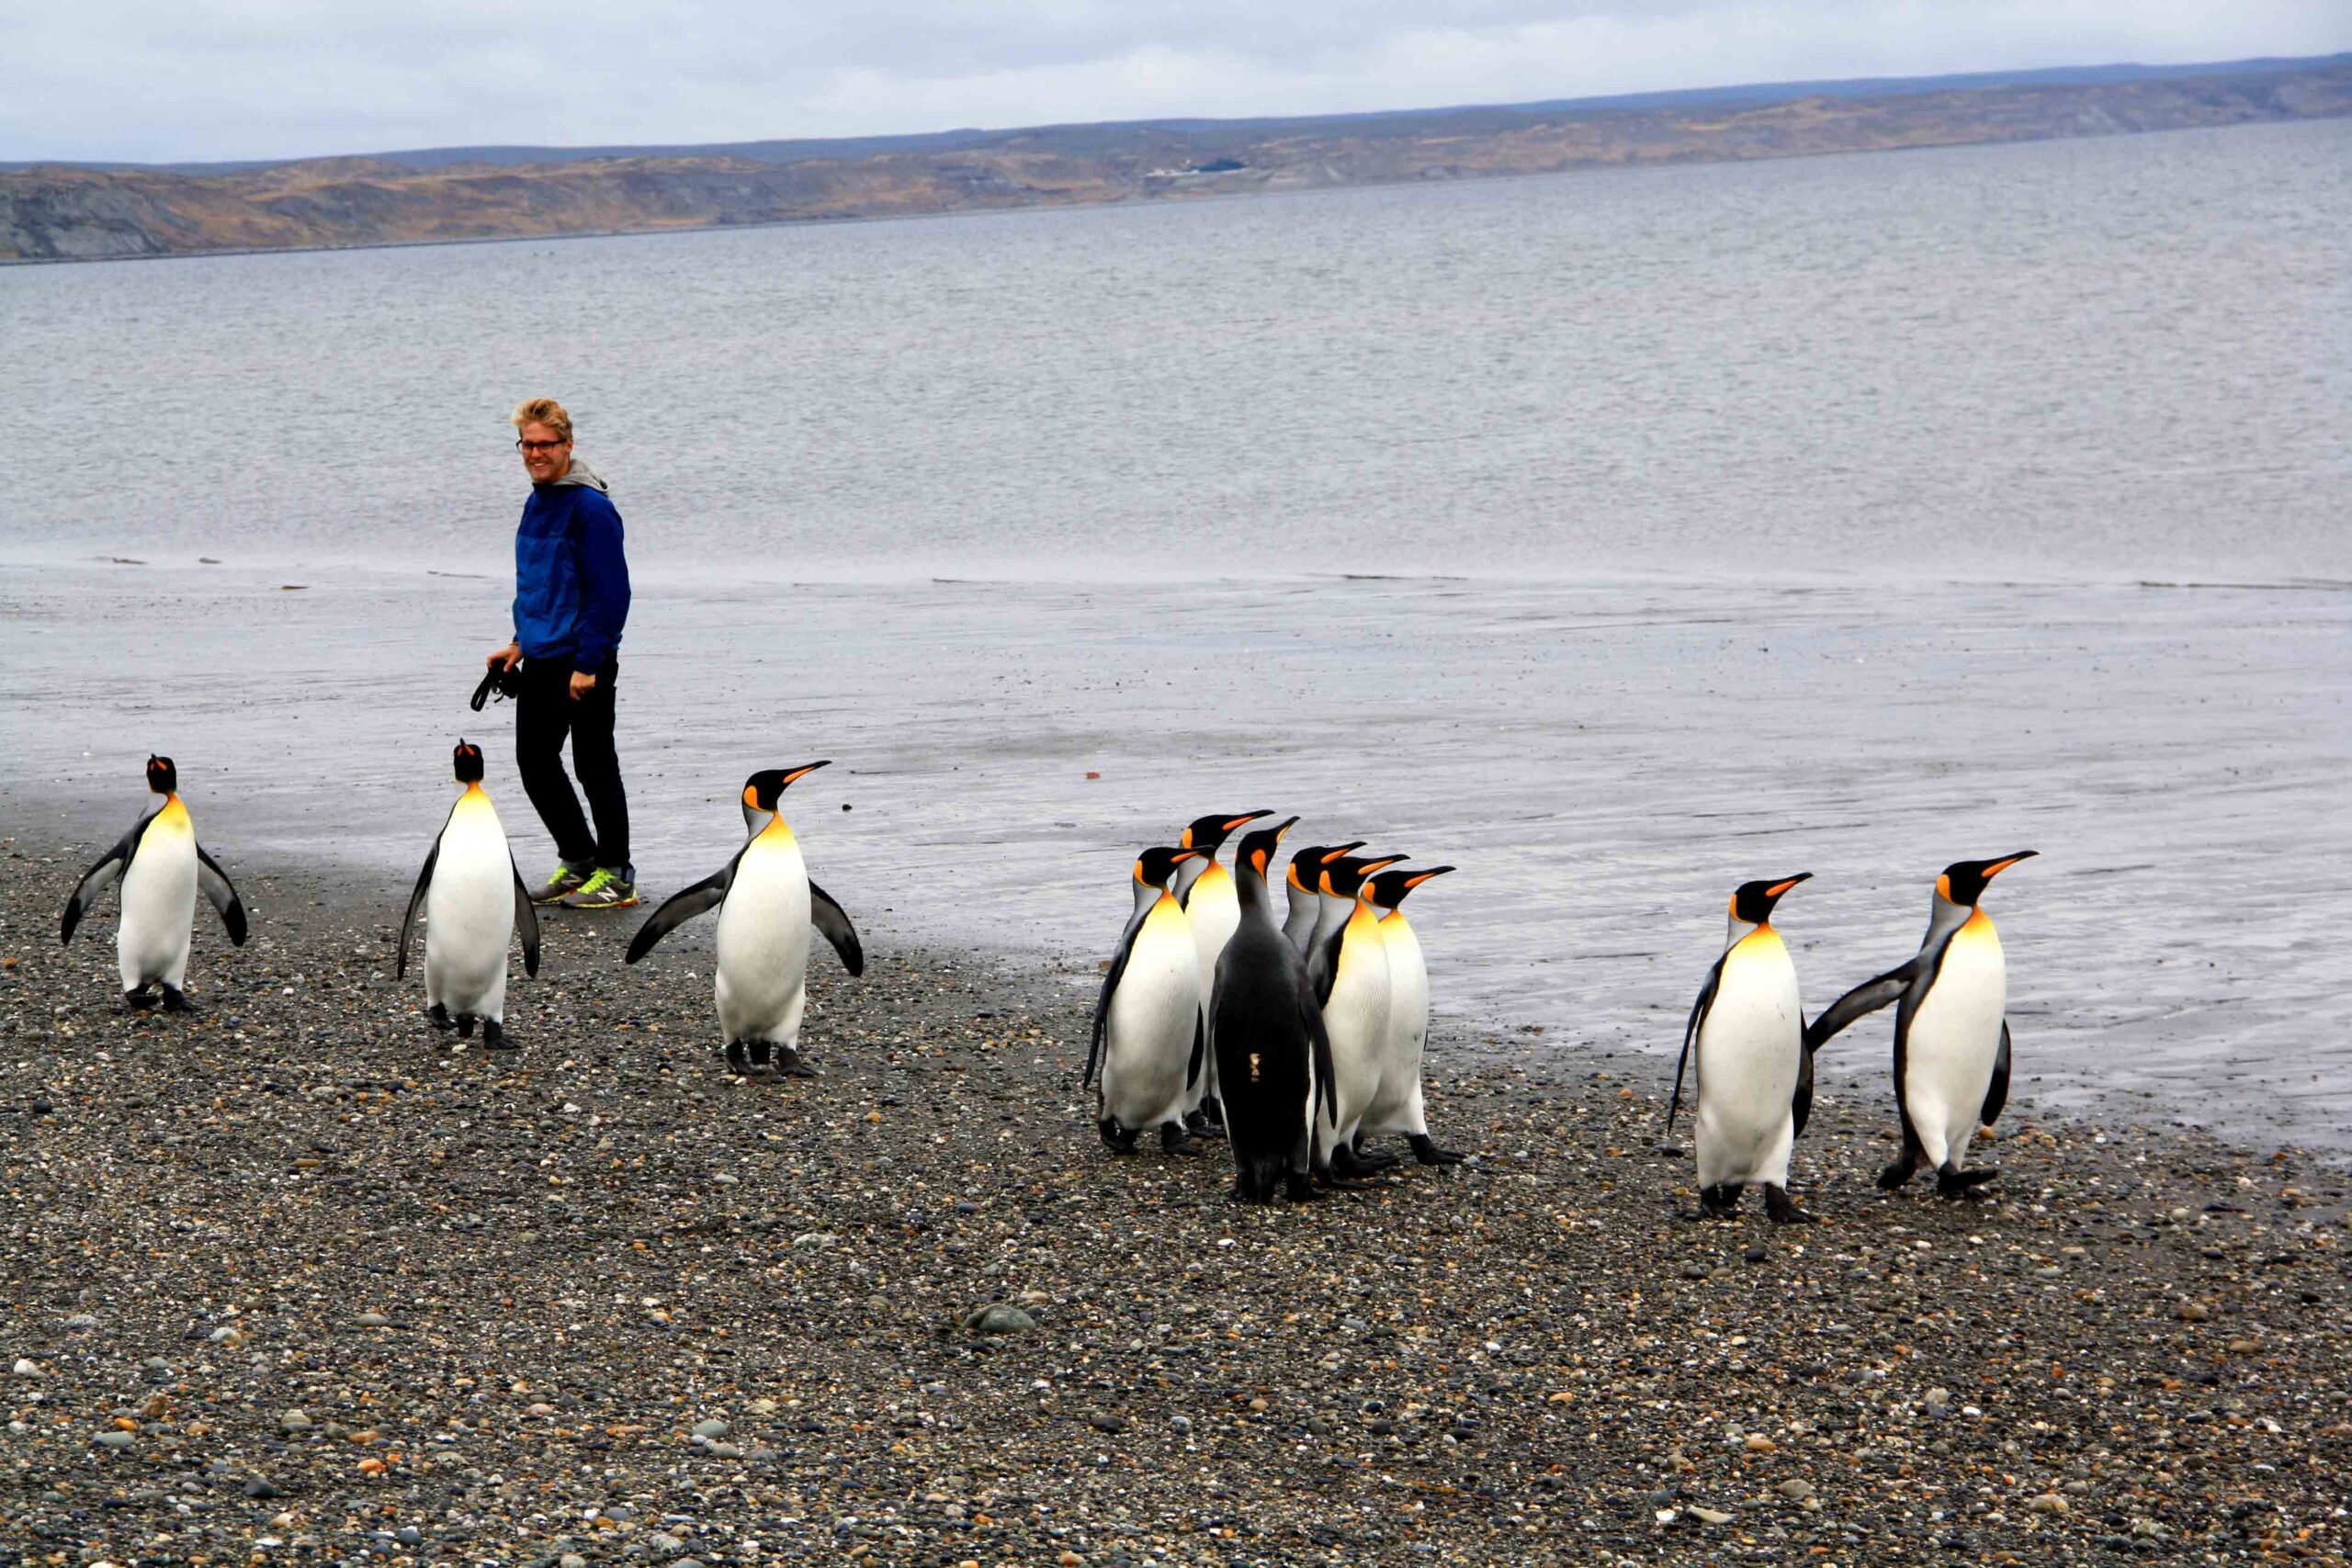 pinguins tierra del fuego national park